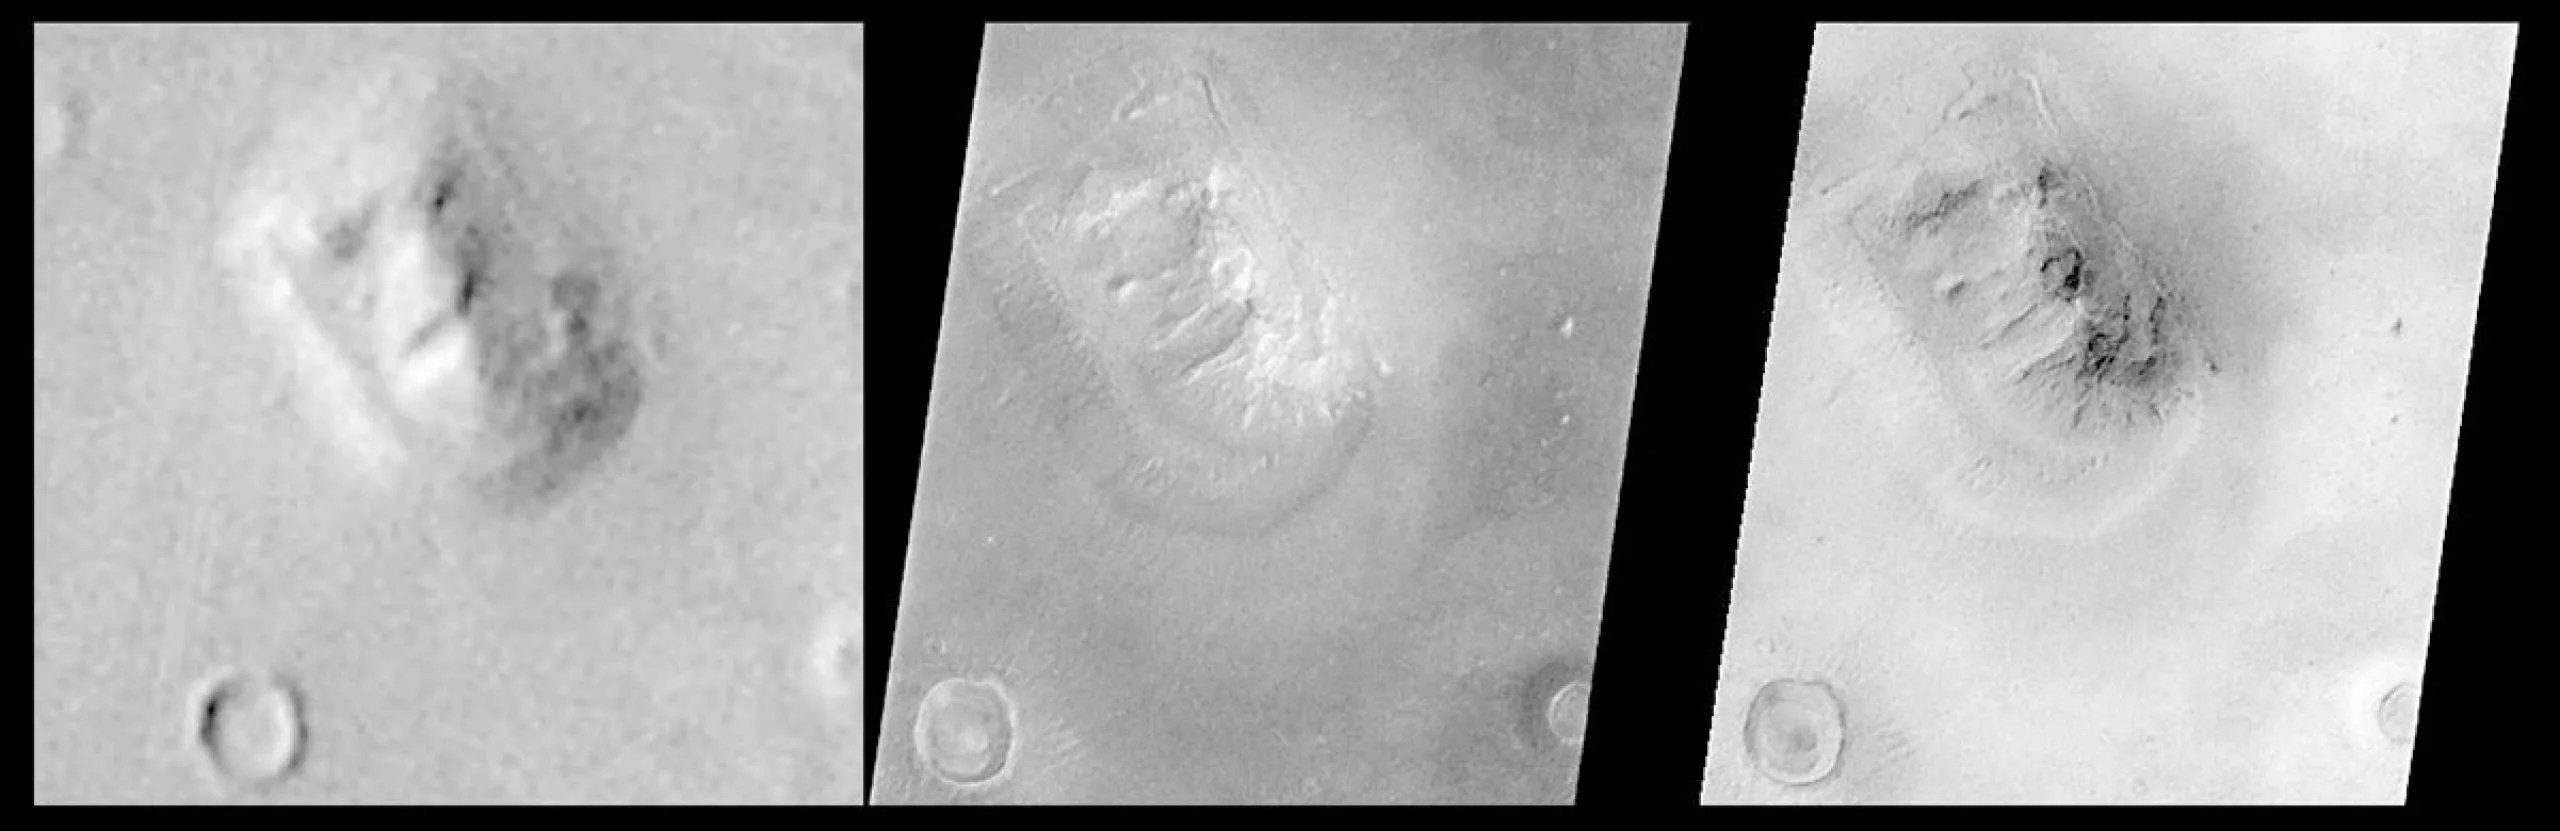 Imagen de Viking ampliada a 3,3 veces la resolución original, imágenes de la cámara Mars Orbiter reducidas; la imagen de la derecha tiene el brillo invertido.